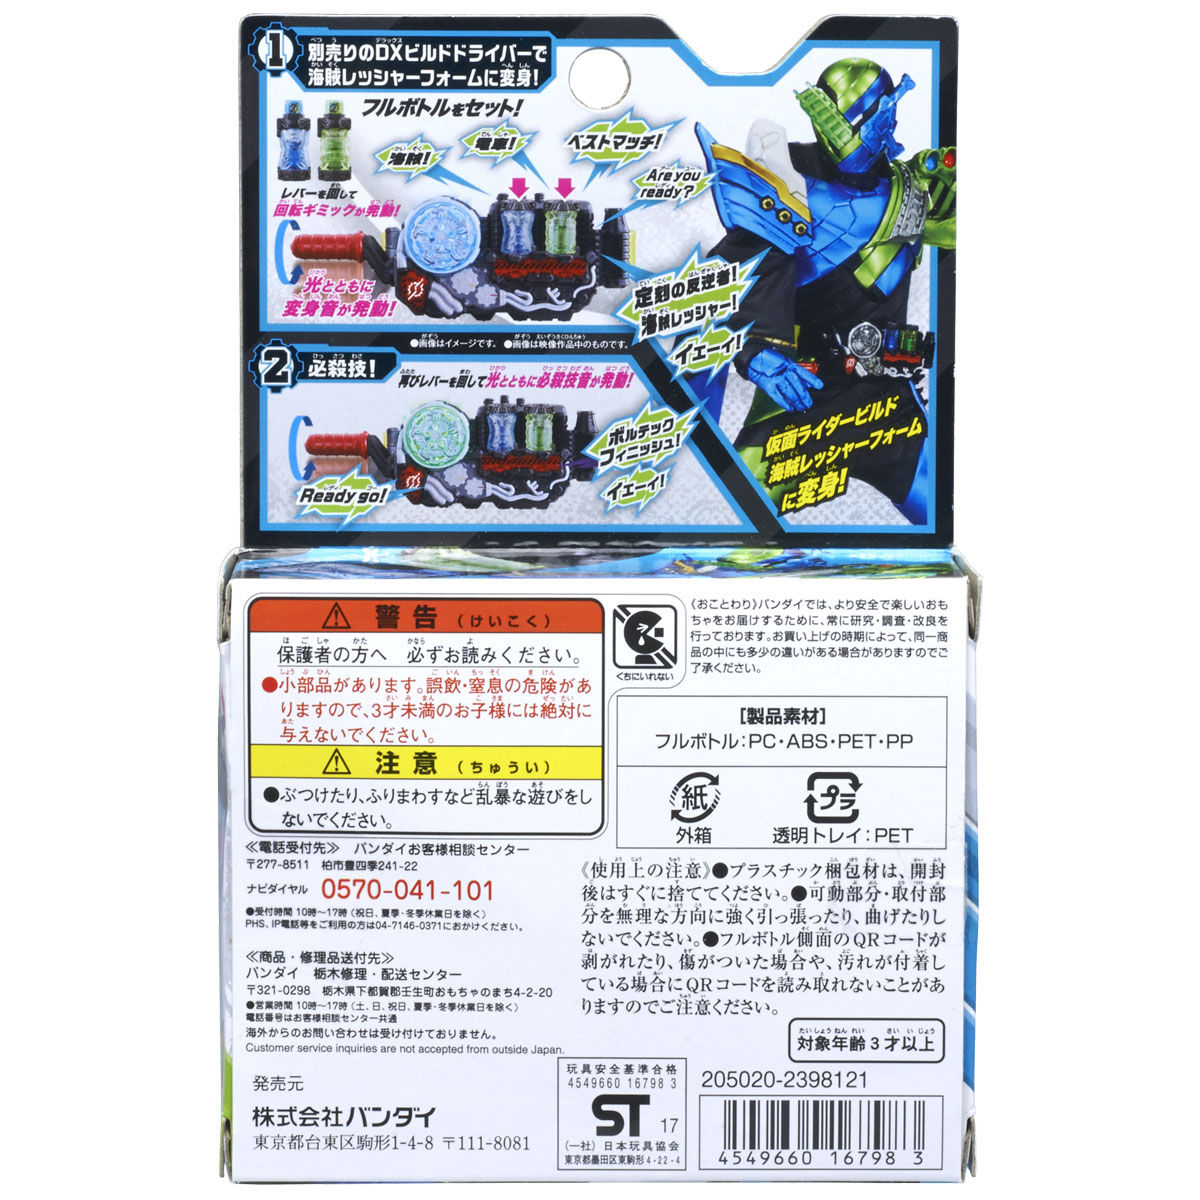 Dx海賊レッシャーフルボトルセット 仮面ライダーおもちゃウェブ バンダイ公式サイト